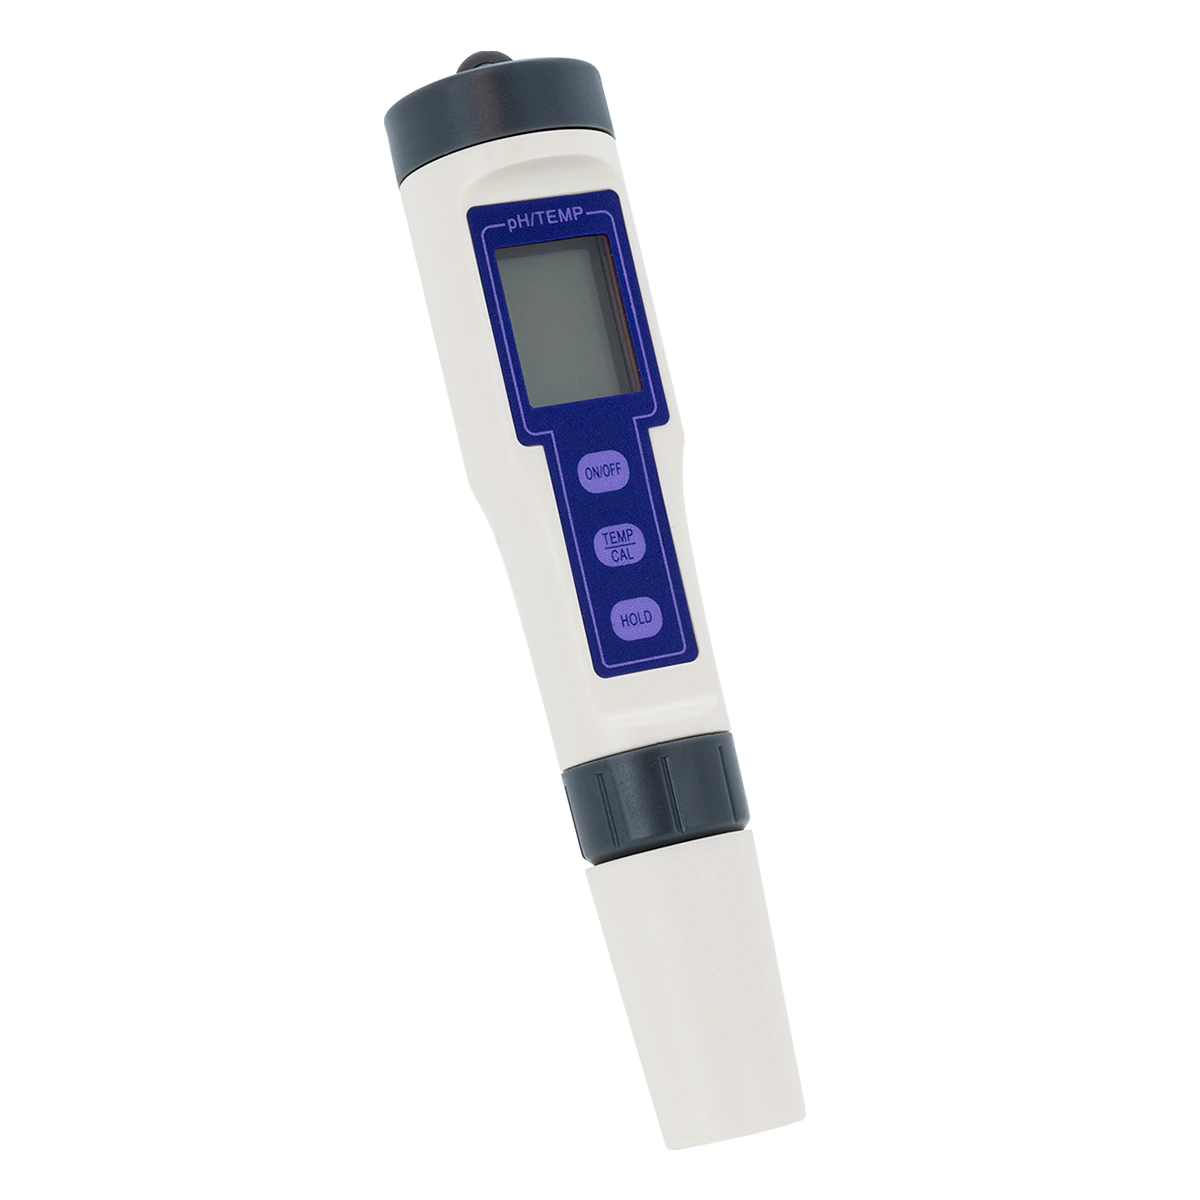 PurePool digitális pH és hőmérséklet mérő műszer